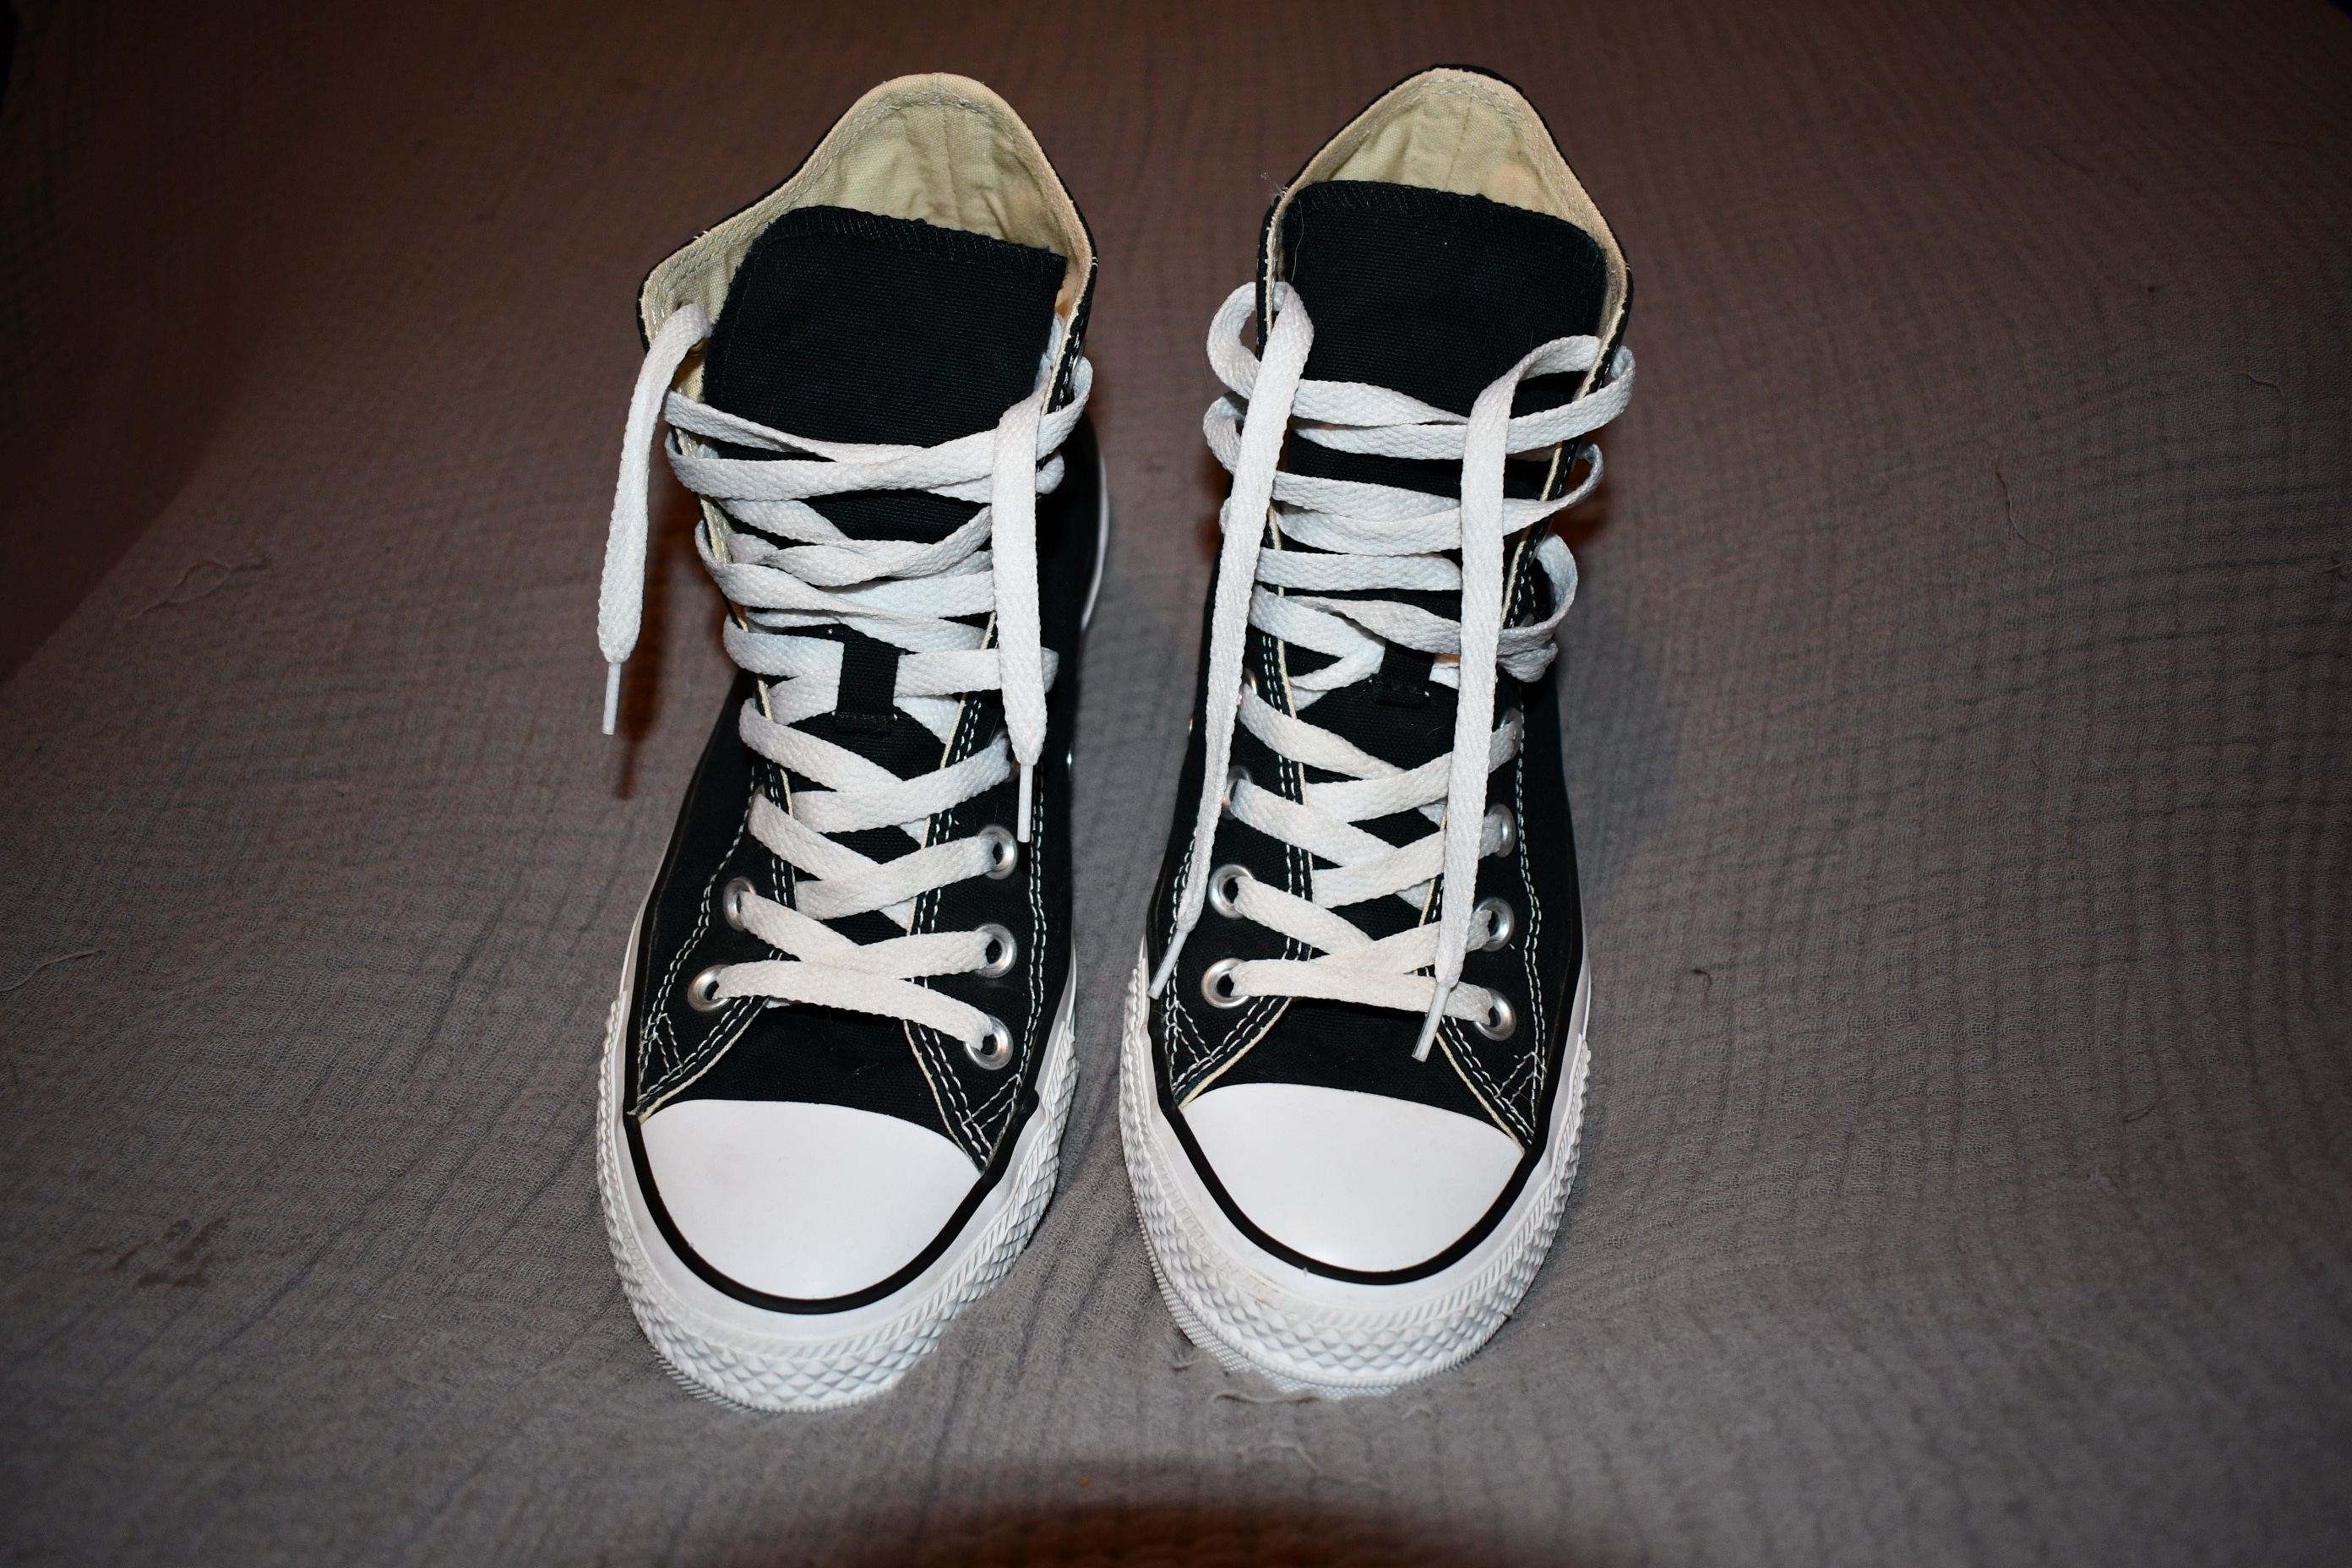 Black Adult Size 7.5 (Women's 8.5) Converse Shoes